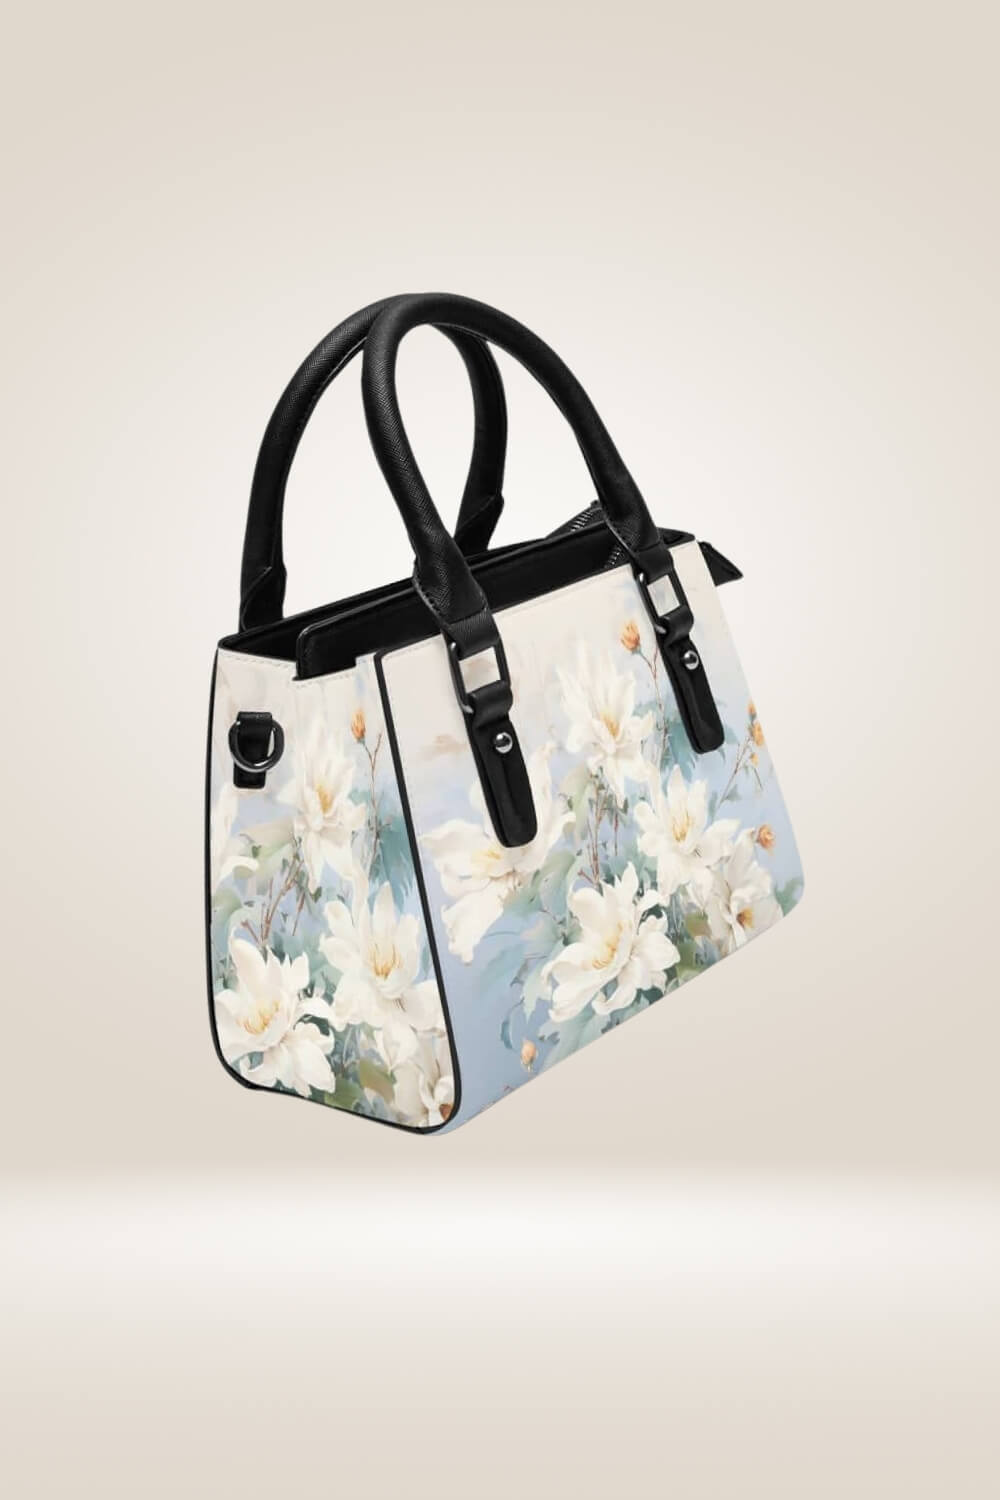 White Flowers Blue Satchel Bag - TGC Boutique - Satchel Handbag